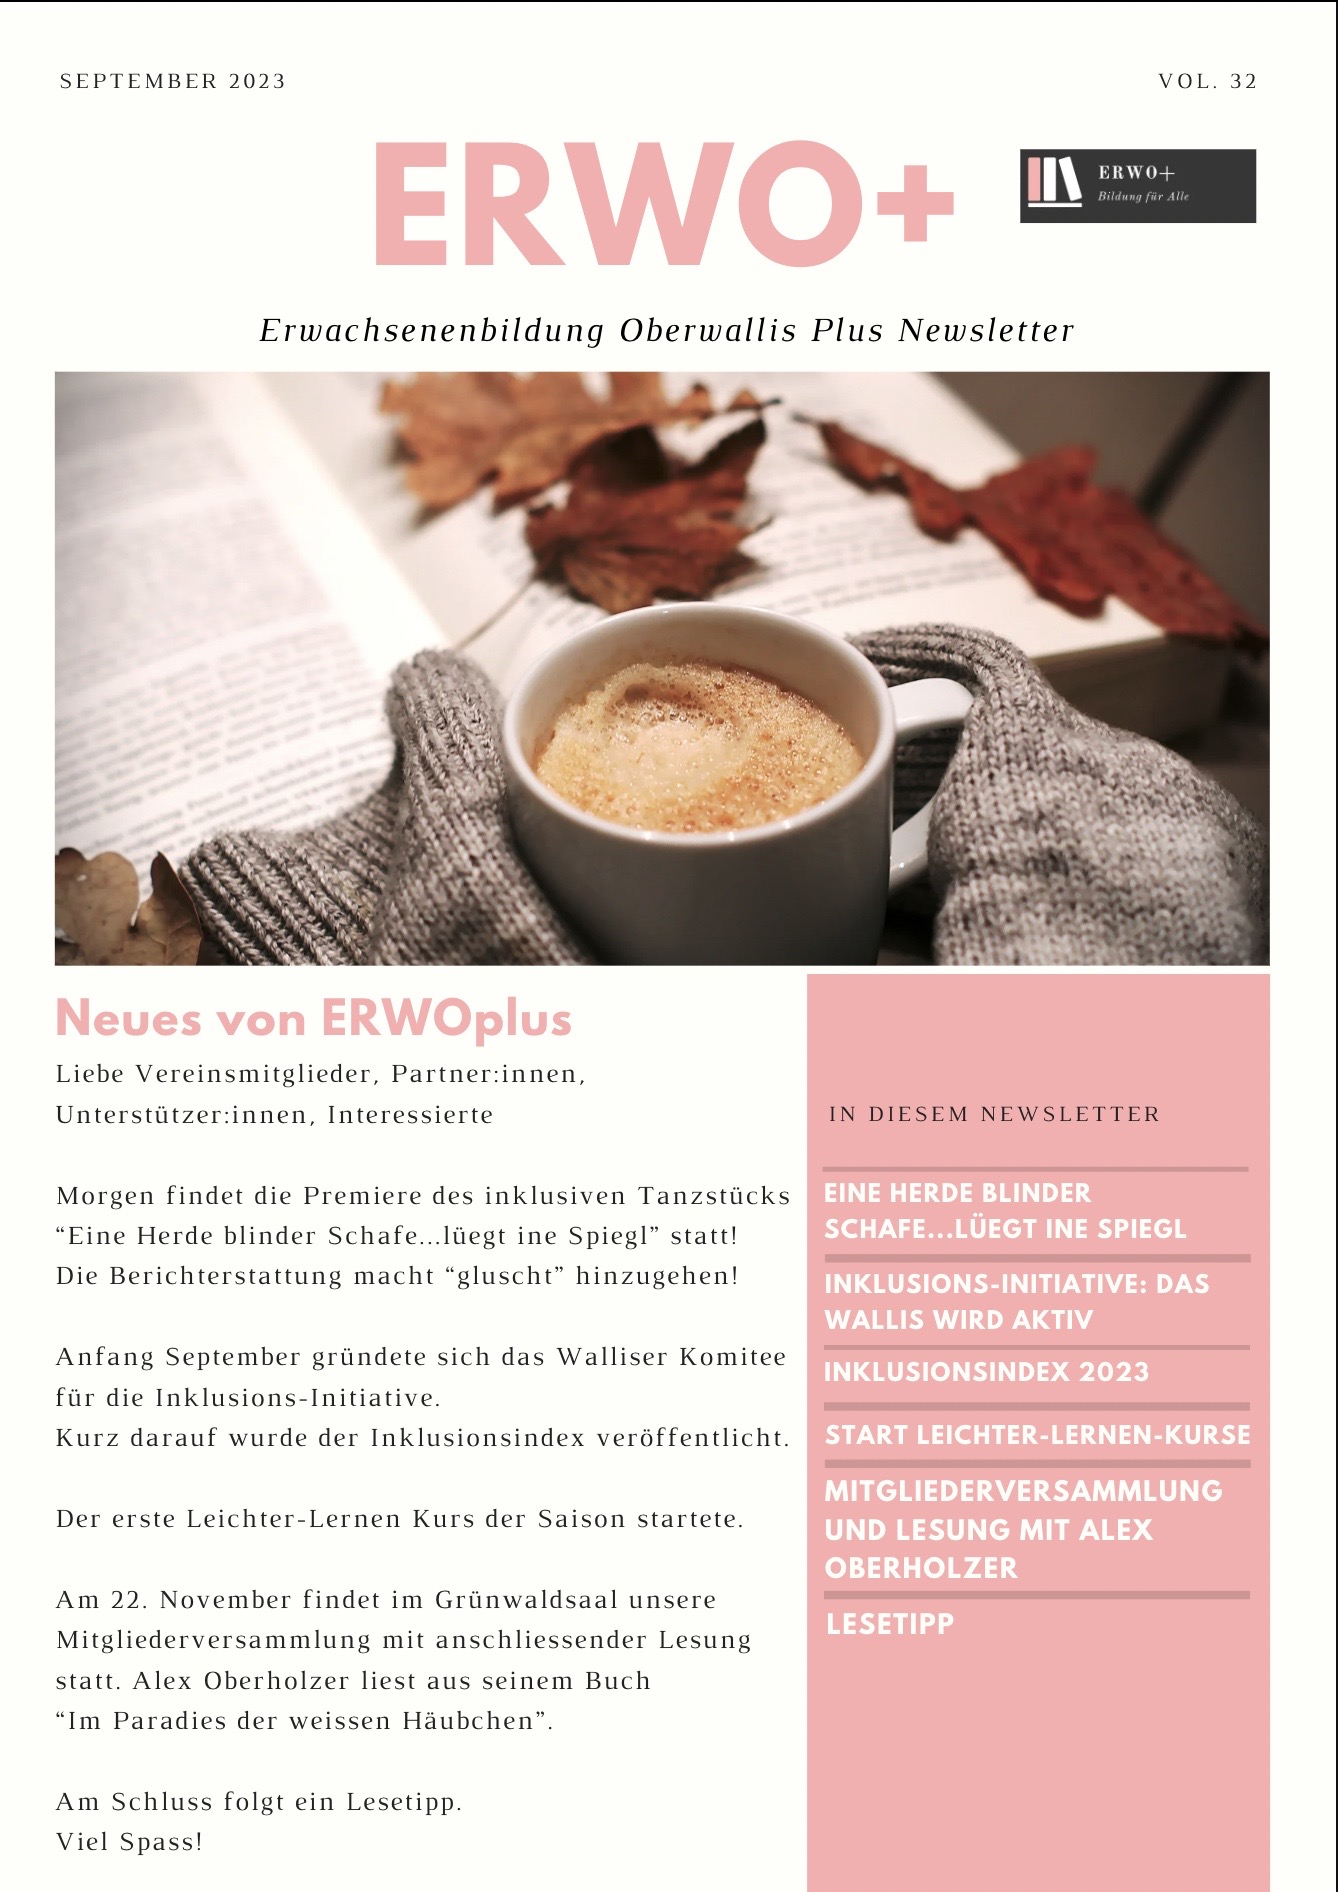 Dies ist das Coverbild vom Newsletter September 2023. Es zeigt eine Tasse Kaffee, ein Buch und die Ärmel eines Pullovers. Hinter dem Bild liegt der Link auf das PDF des Newsletters.